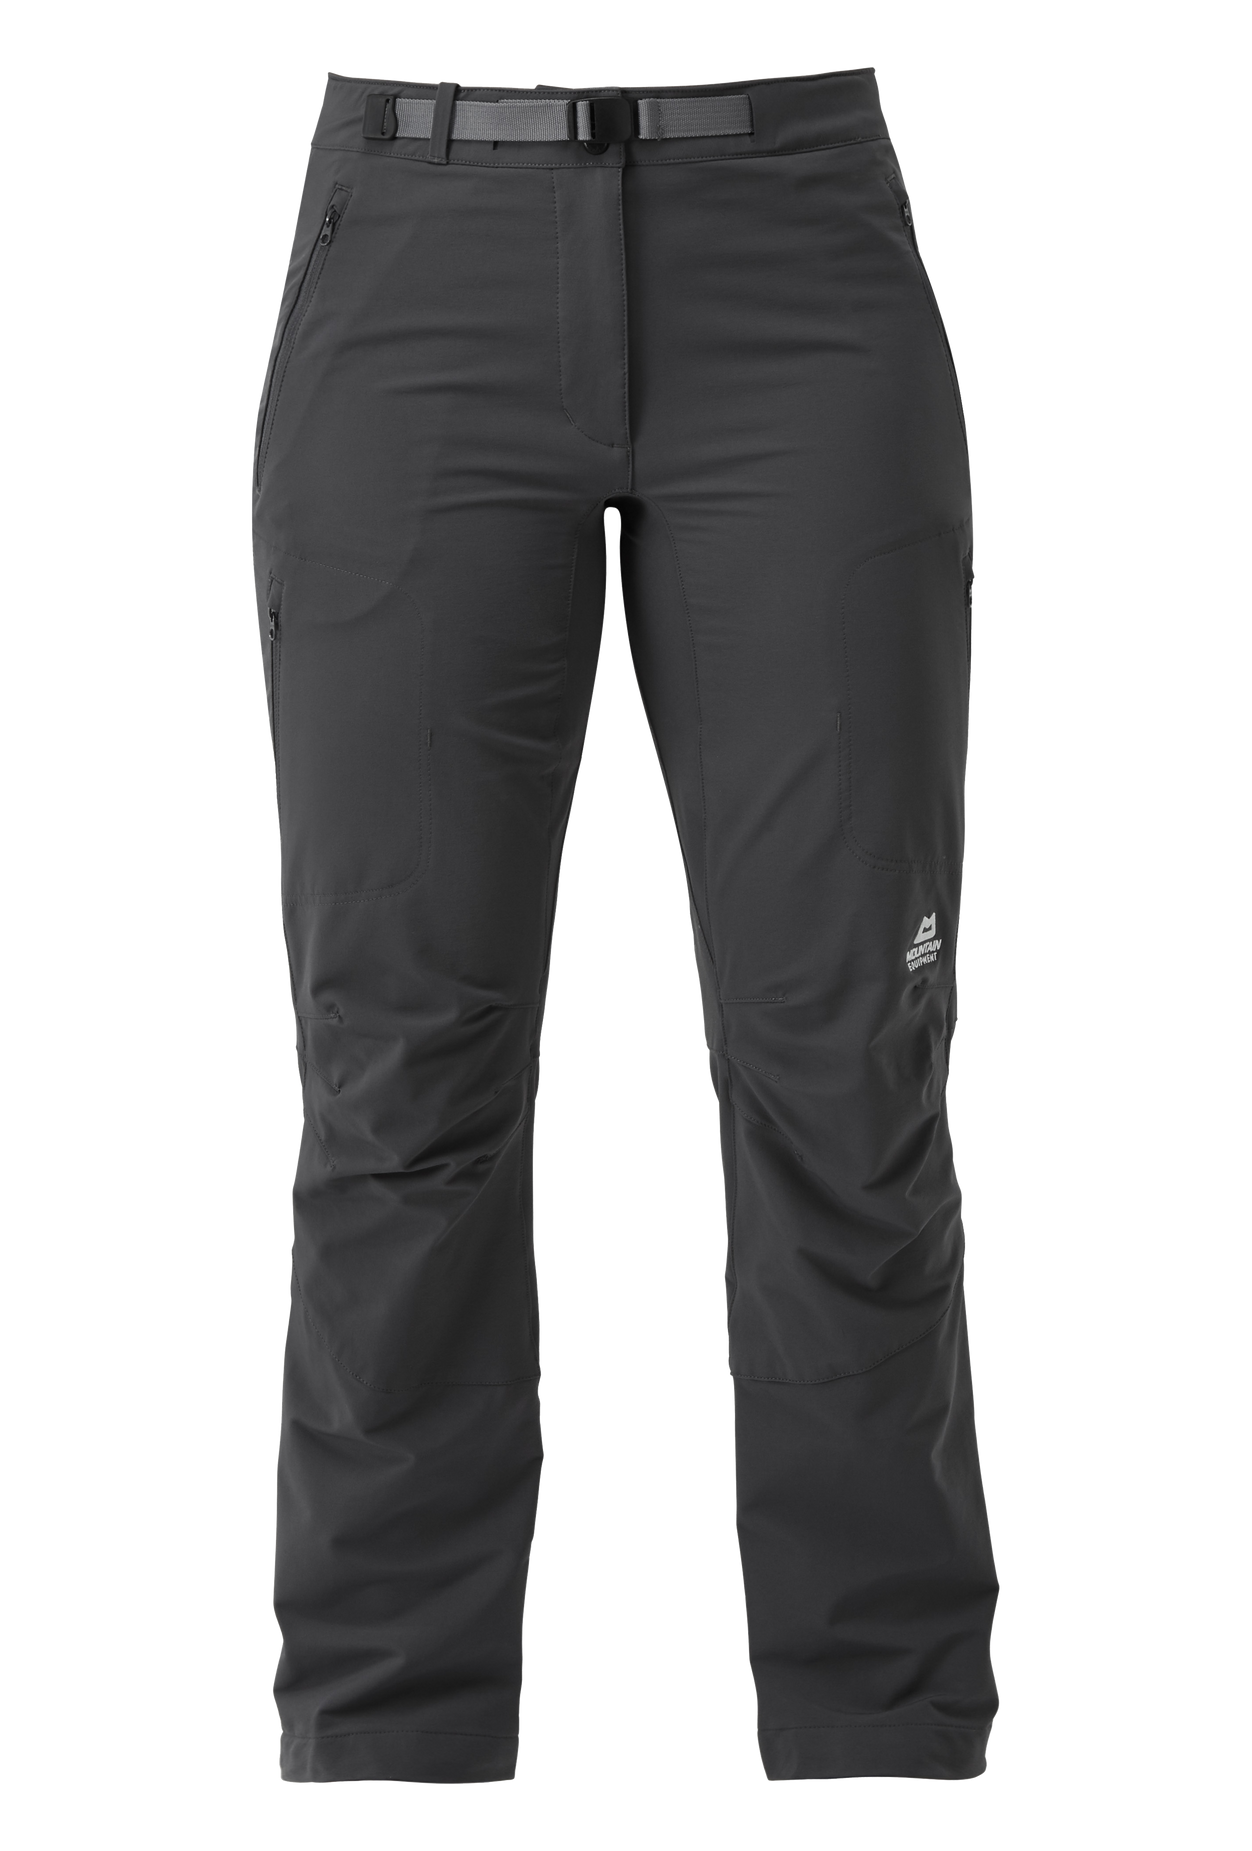 Mountain Equipment dámské softshellové kalhoty Chamois Wmns Pant Barva: Anvil Grey, Velikost: 18/XXL